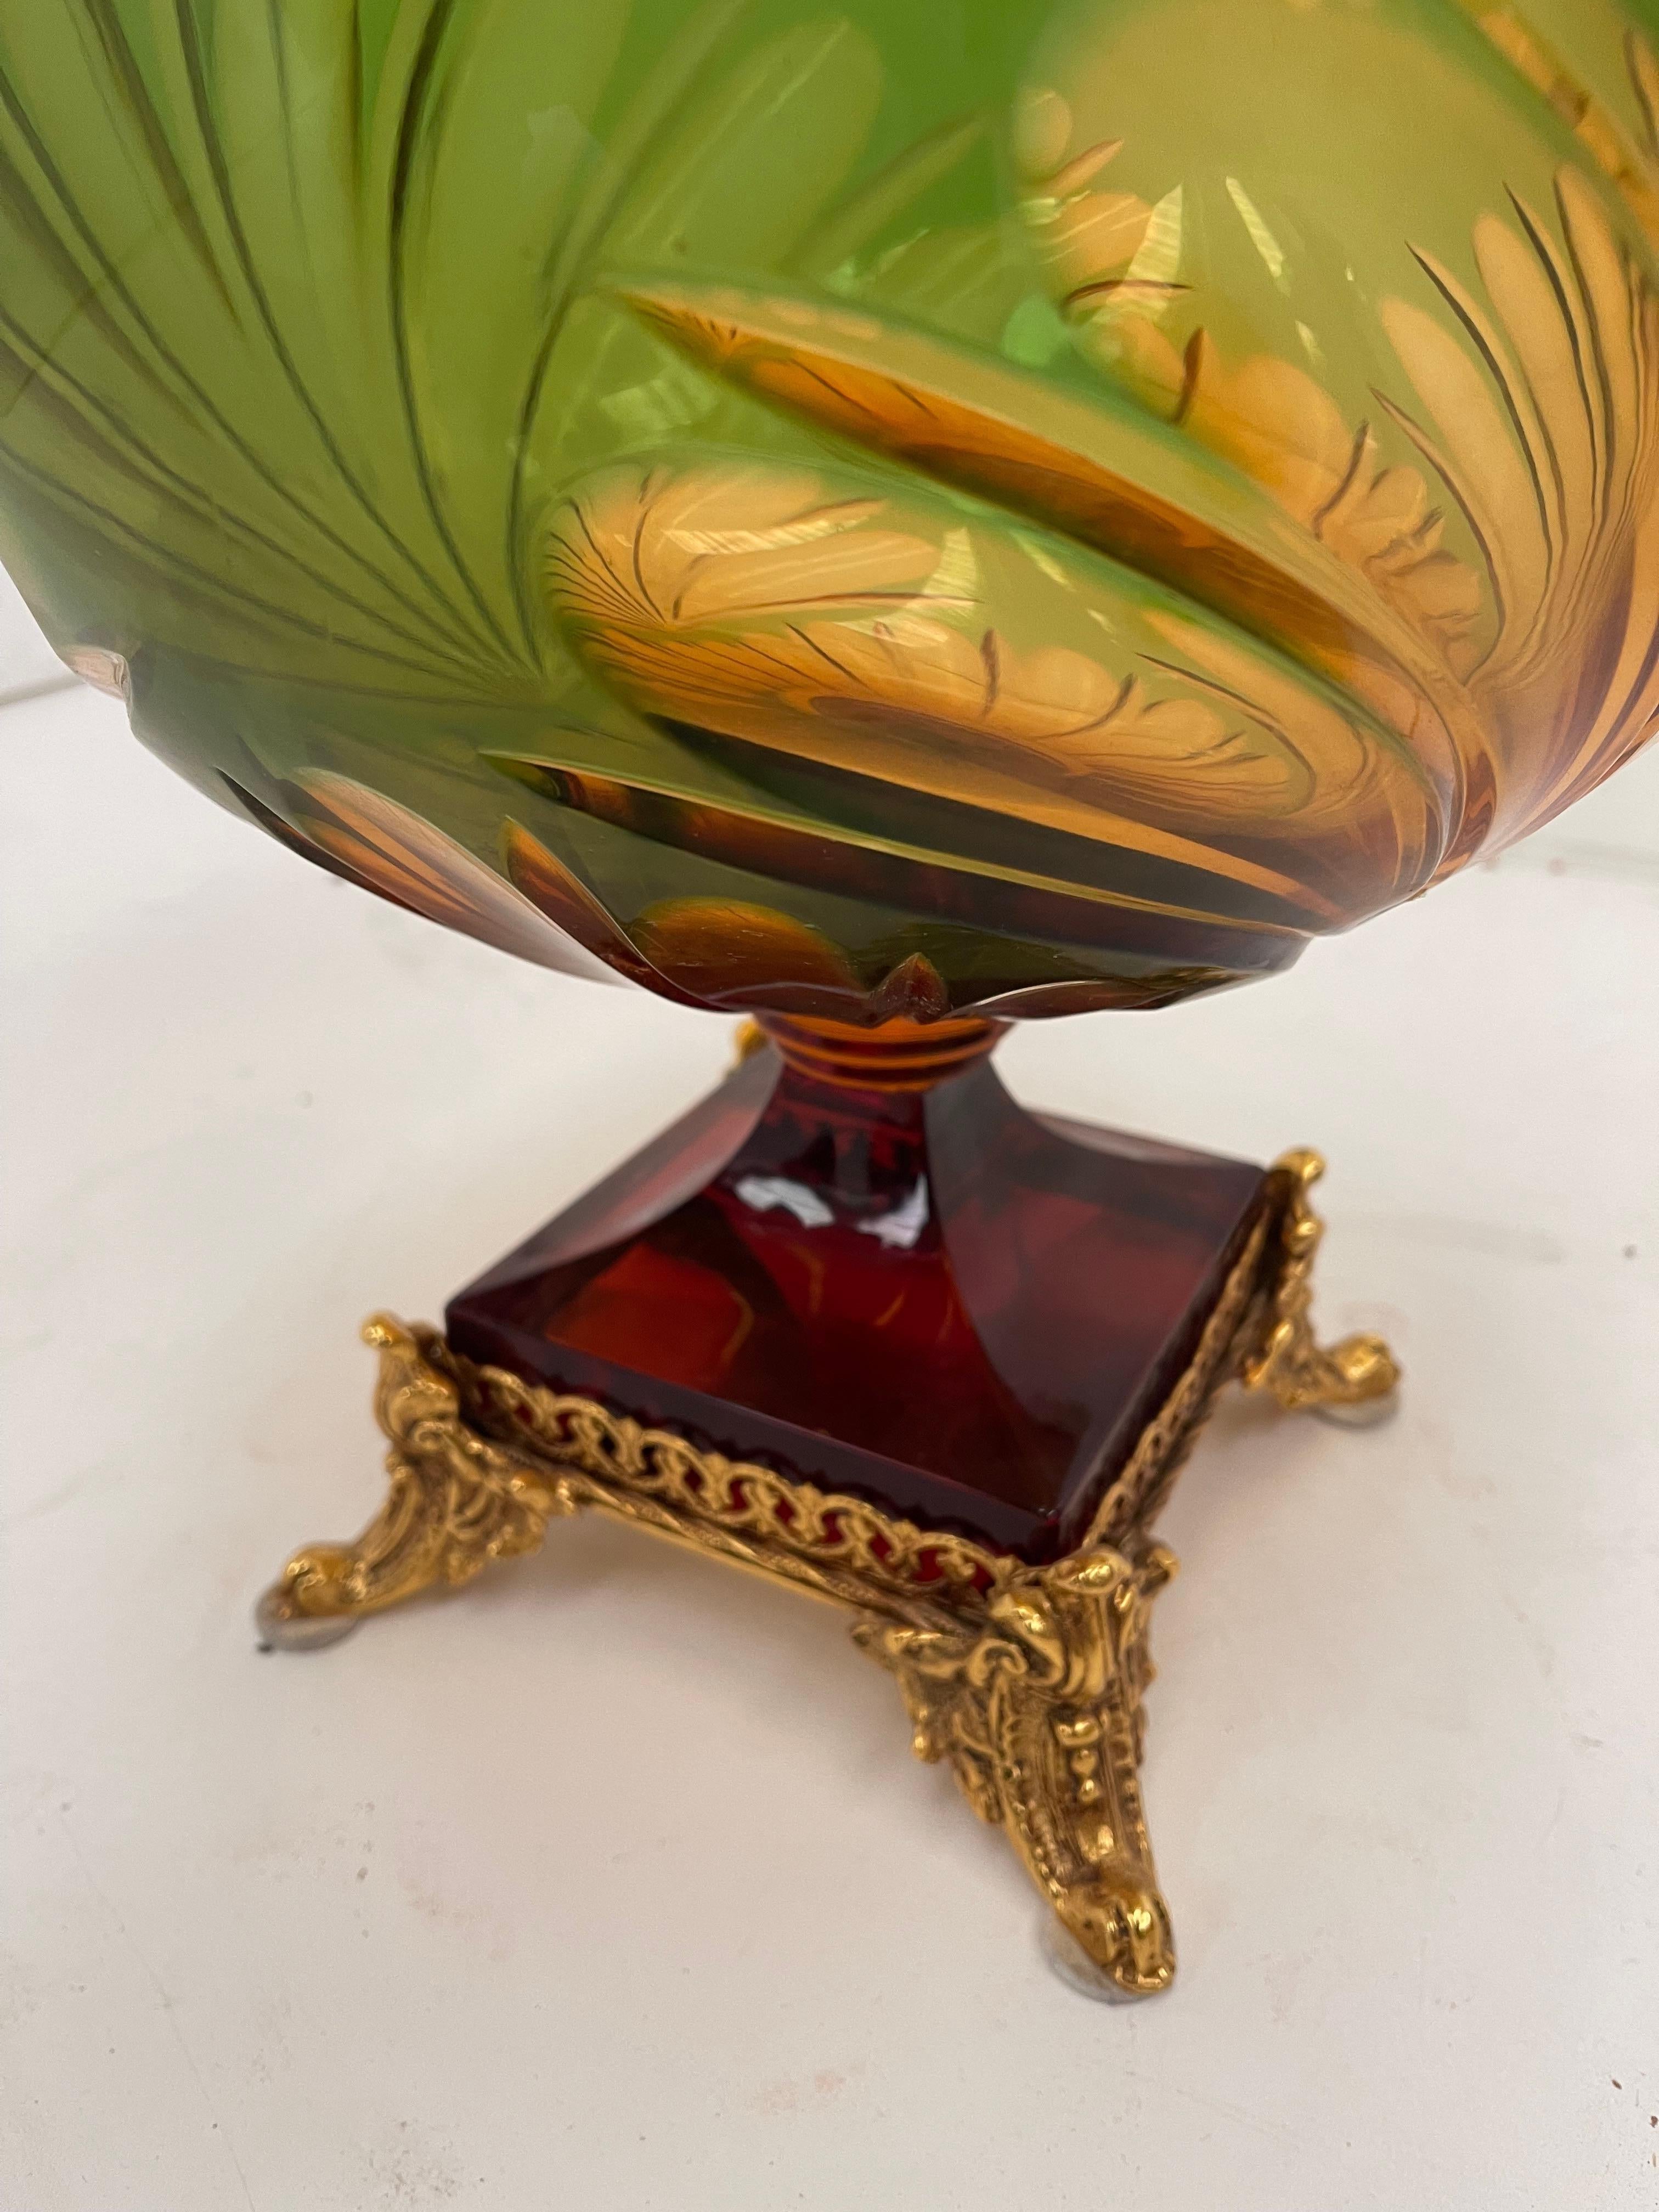 Maestozo Cristallo con extraordianerie molature in preziosito con bronzi  In Excellent Condition For Sale In Cantù, IT